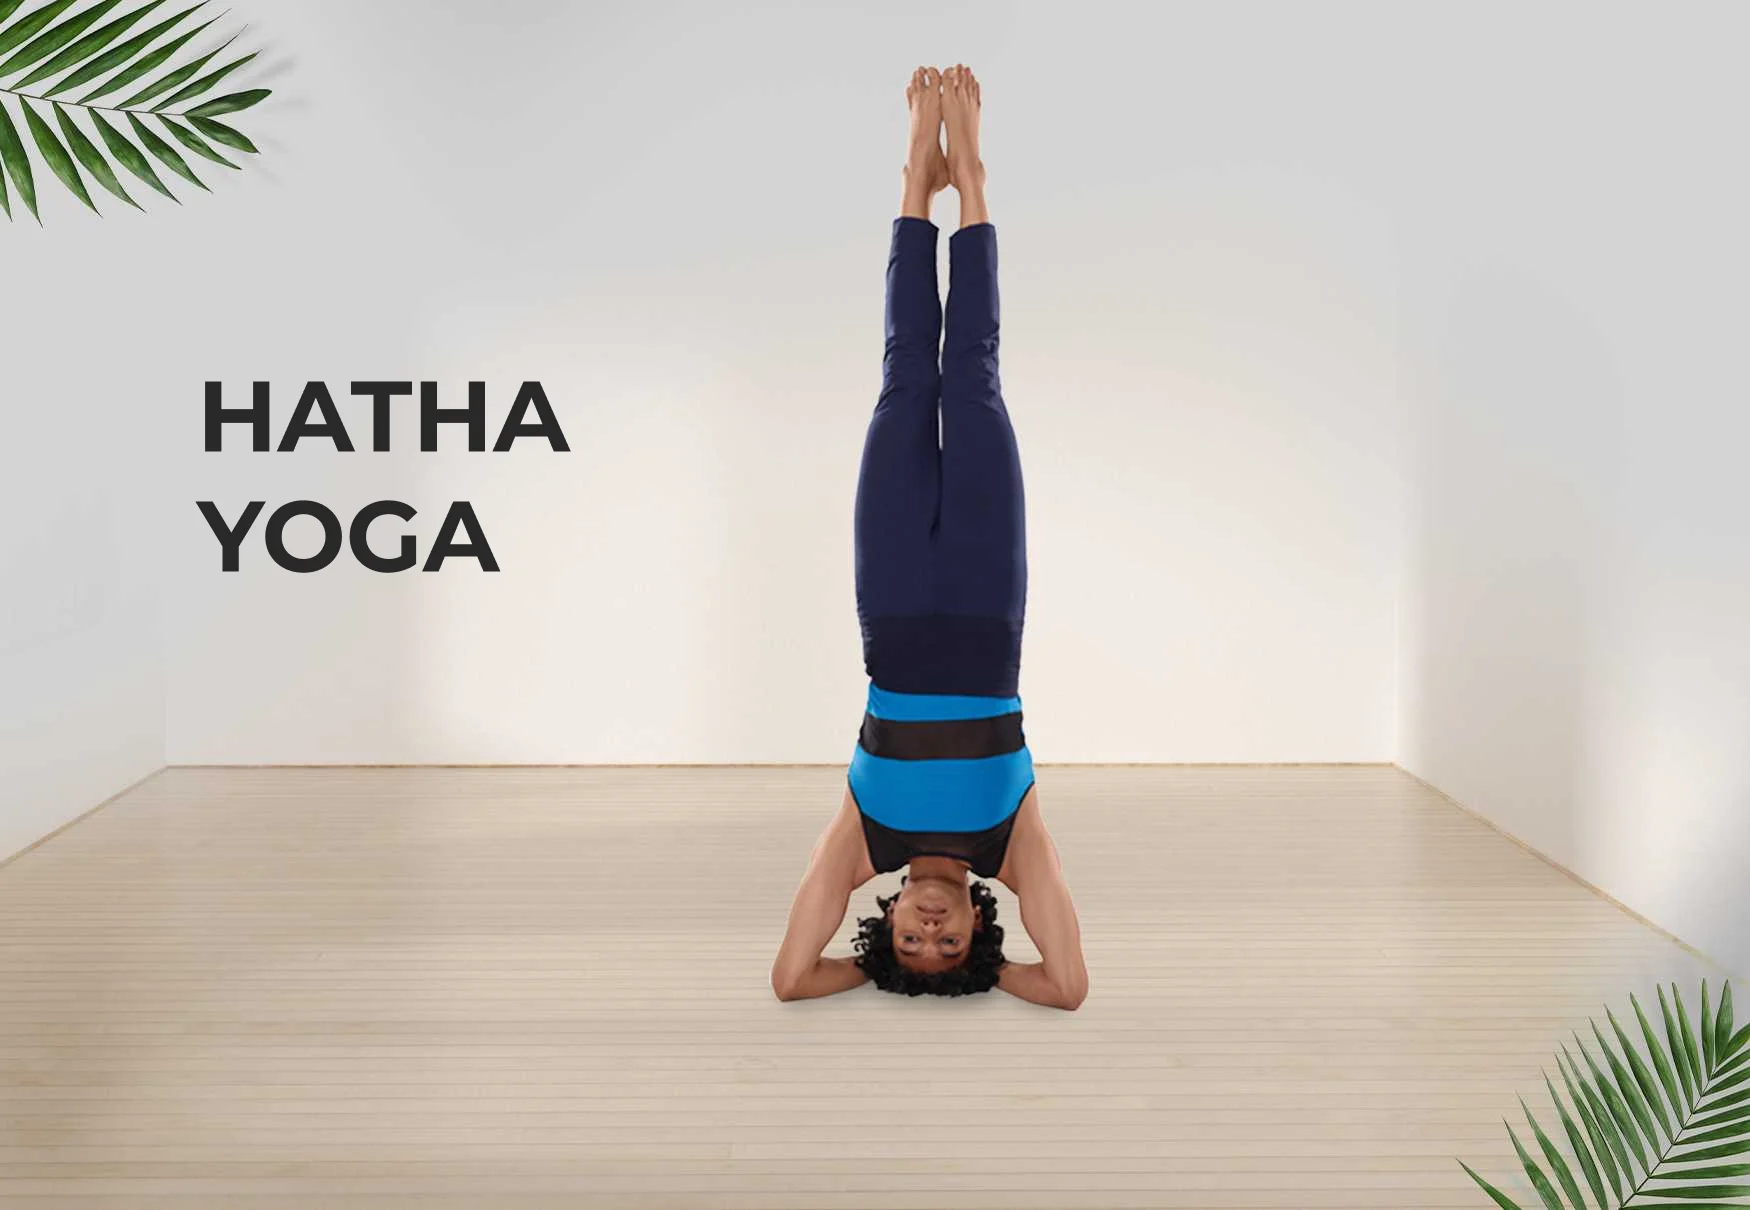 Hatha Yoga Asanas; Warrior poses explained - YouTube